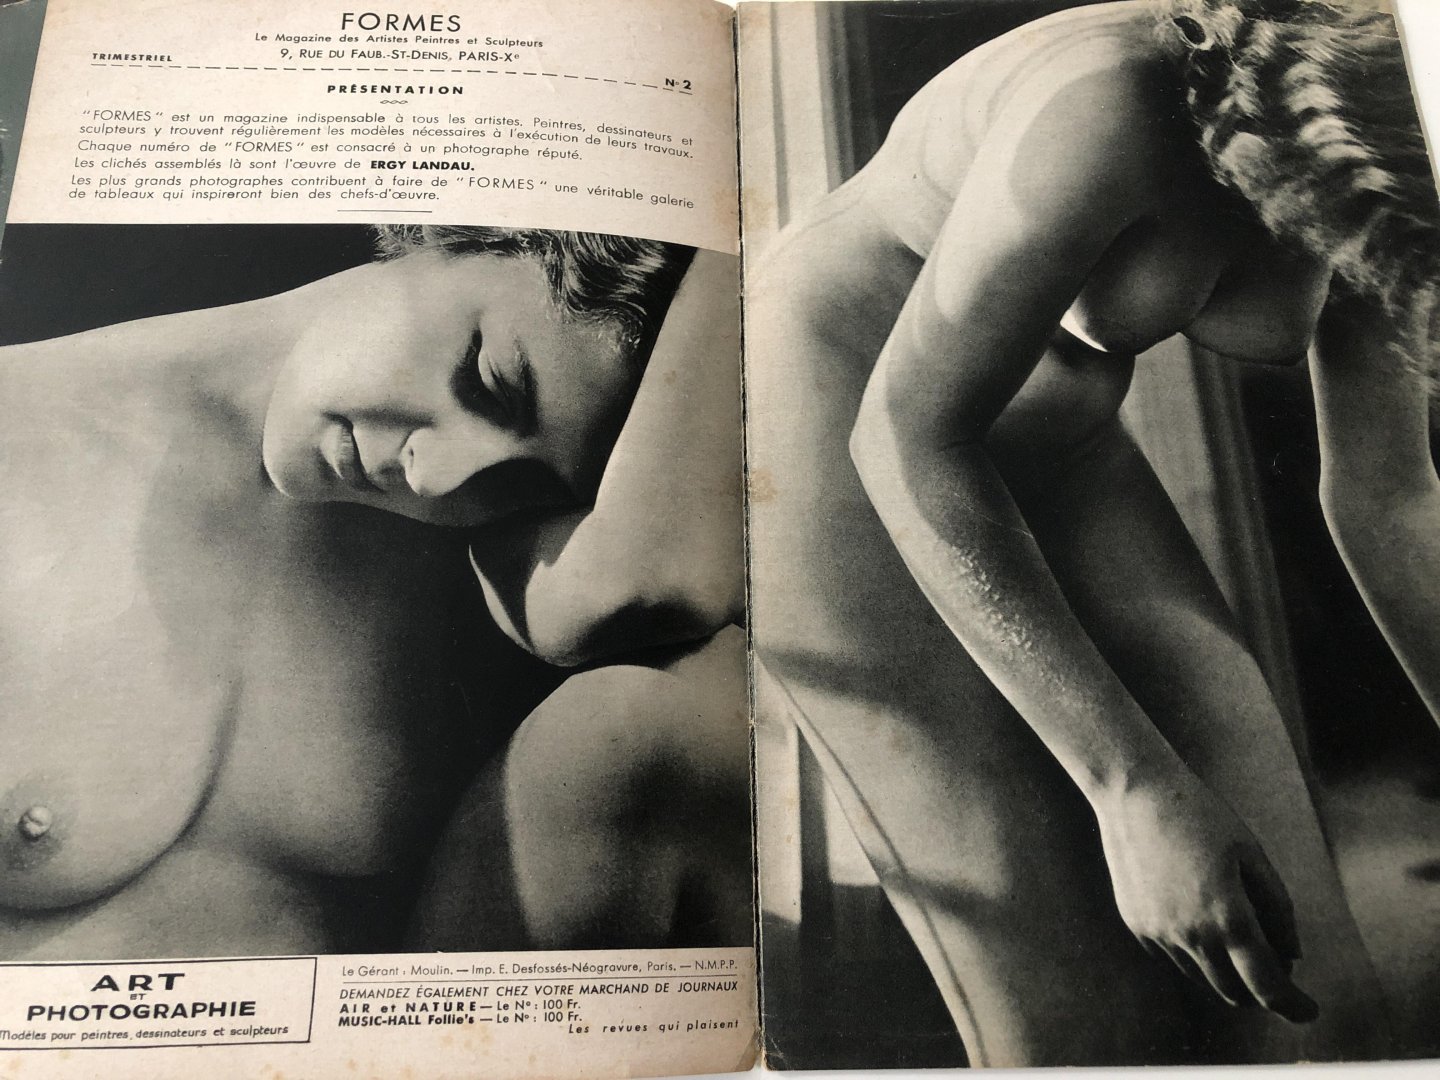 Ergy Landau - Formes no 2, la magazine des artistes peintres er sculpteurs